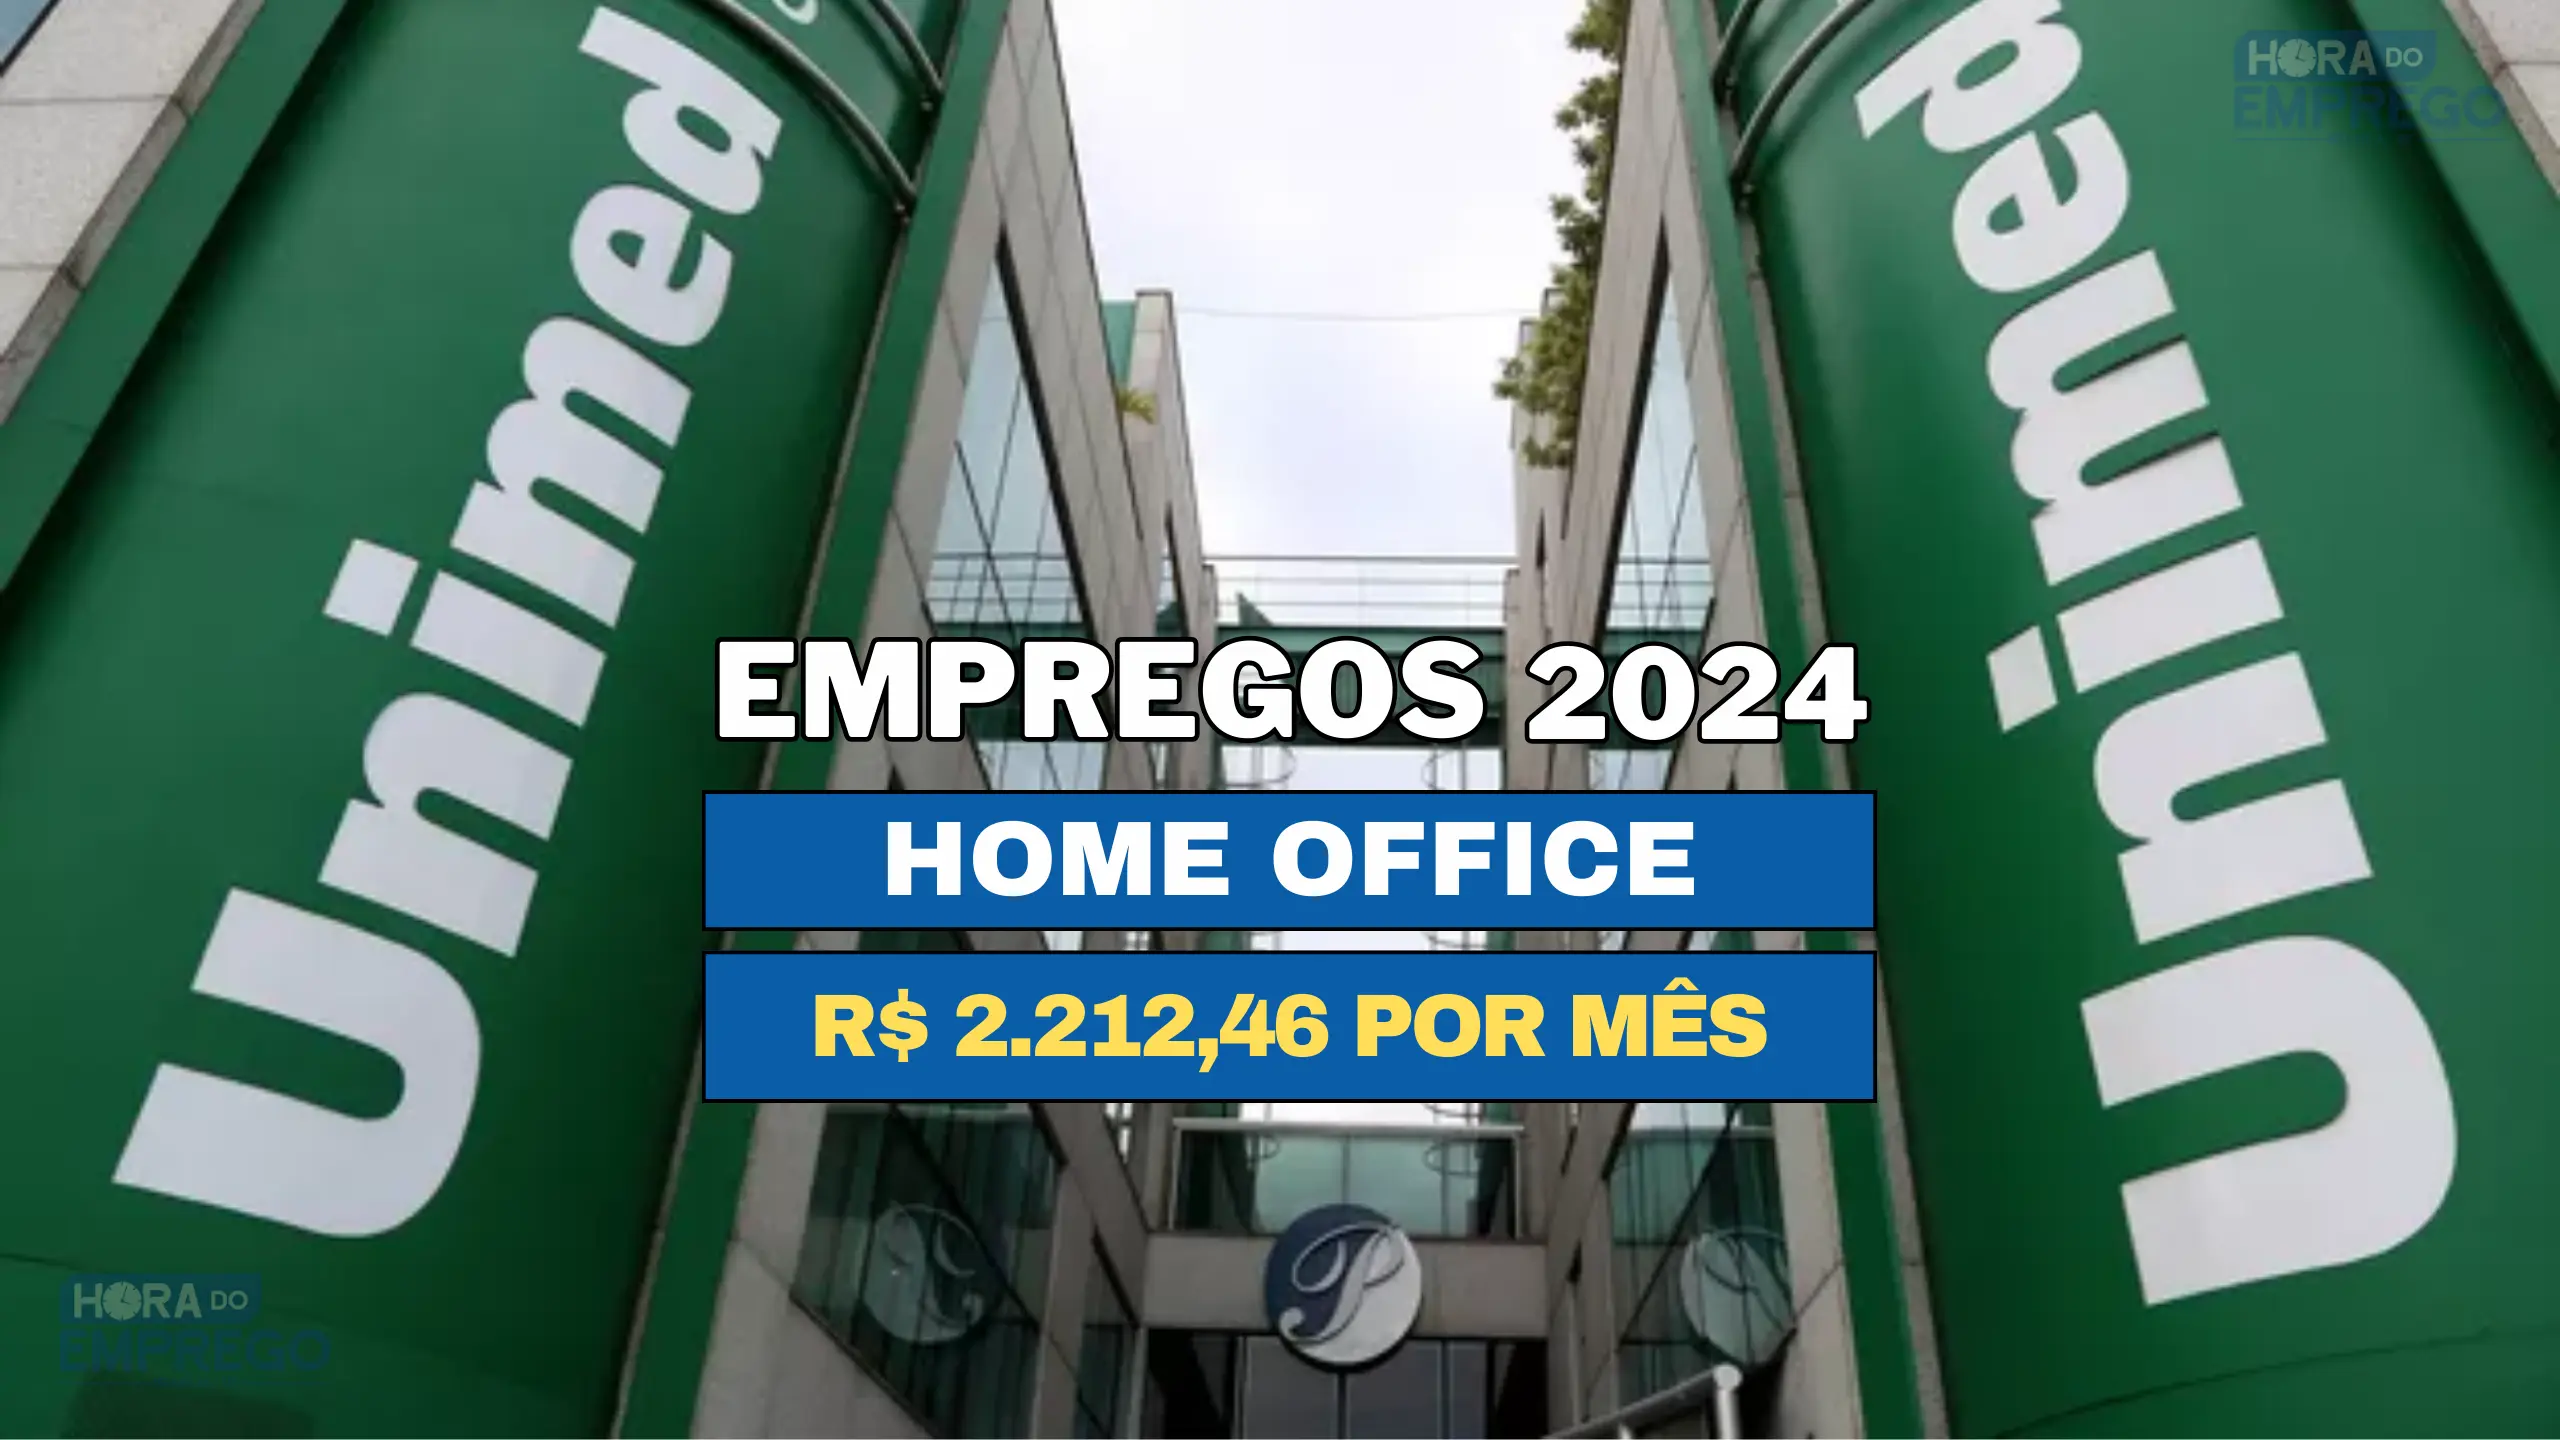 Trabalhe de Casa: Unimed abriu agora em Janeiro vaga HOME OFFICE com salário de R$ 2.212,46 para Assistente de Autorização